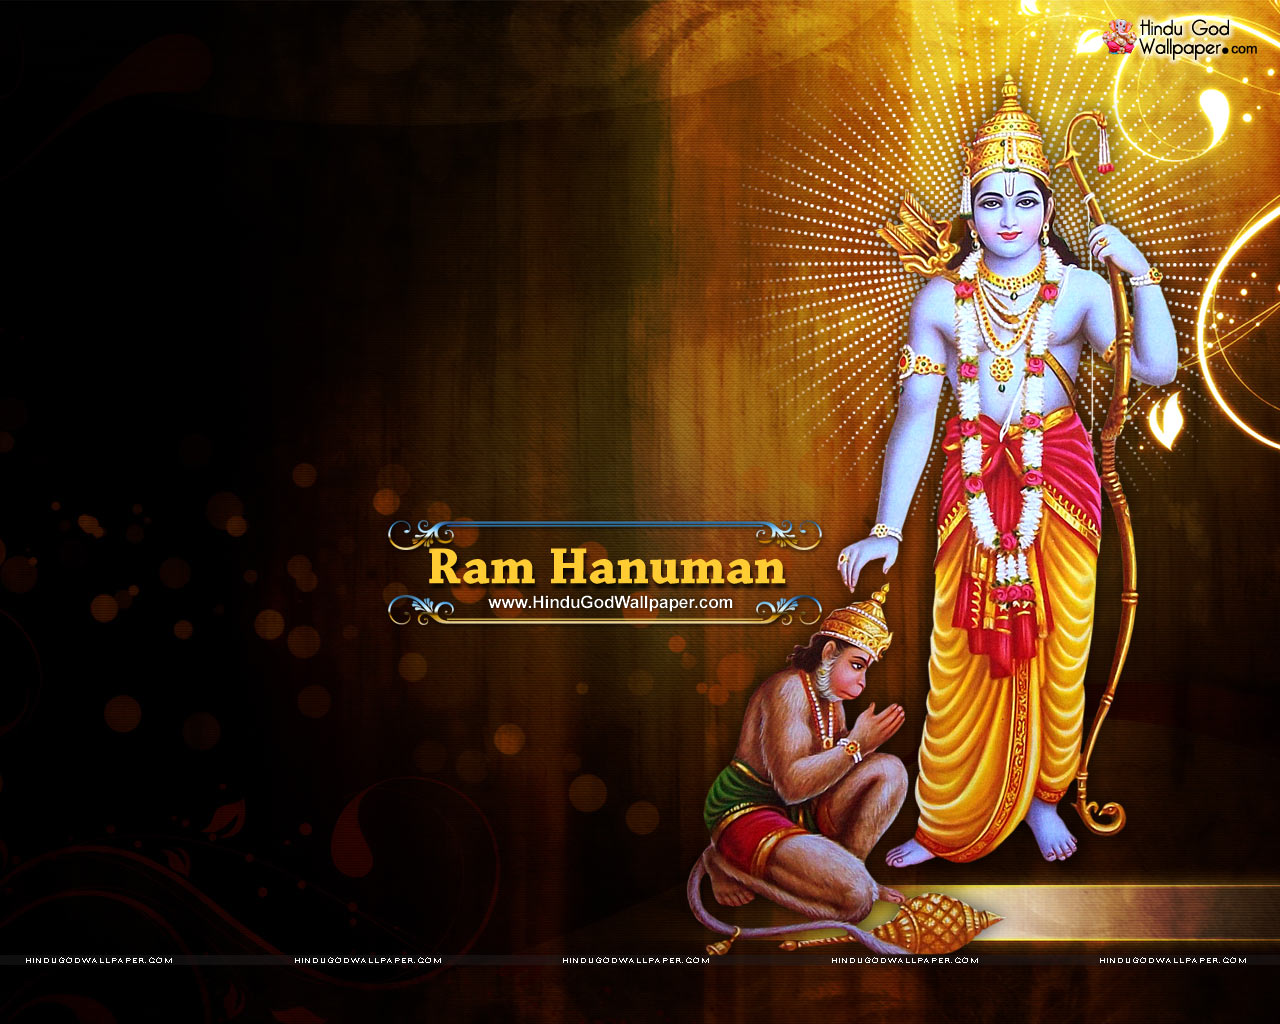 Shri Ram Hanuman